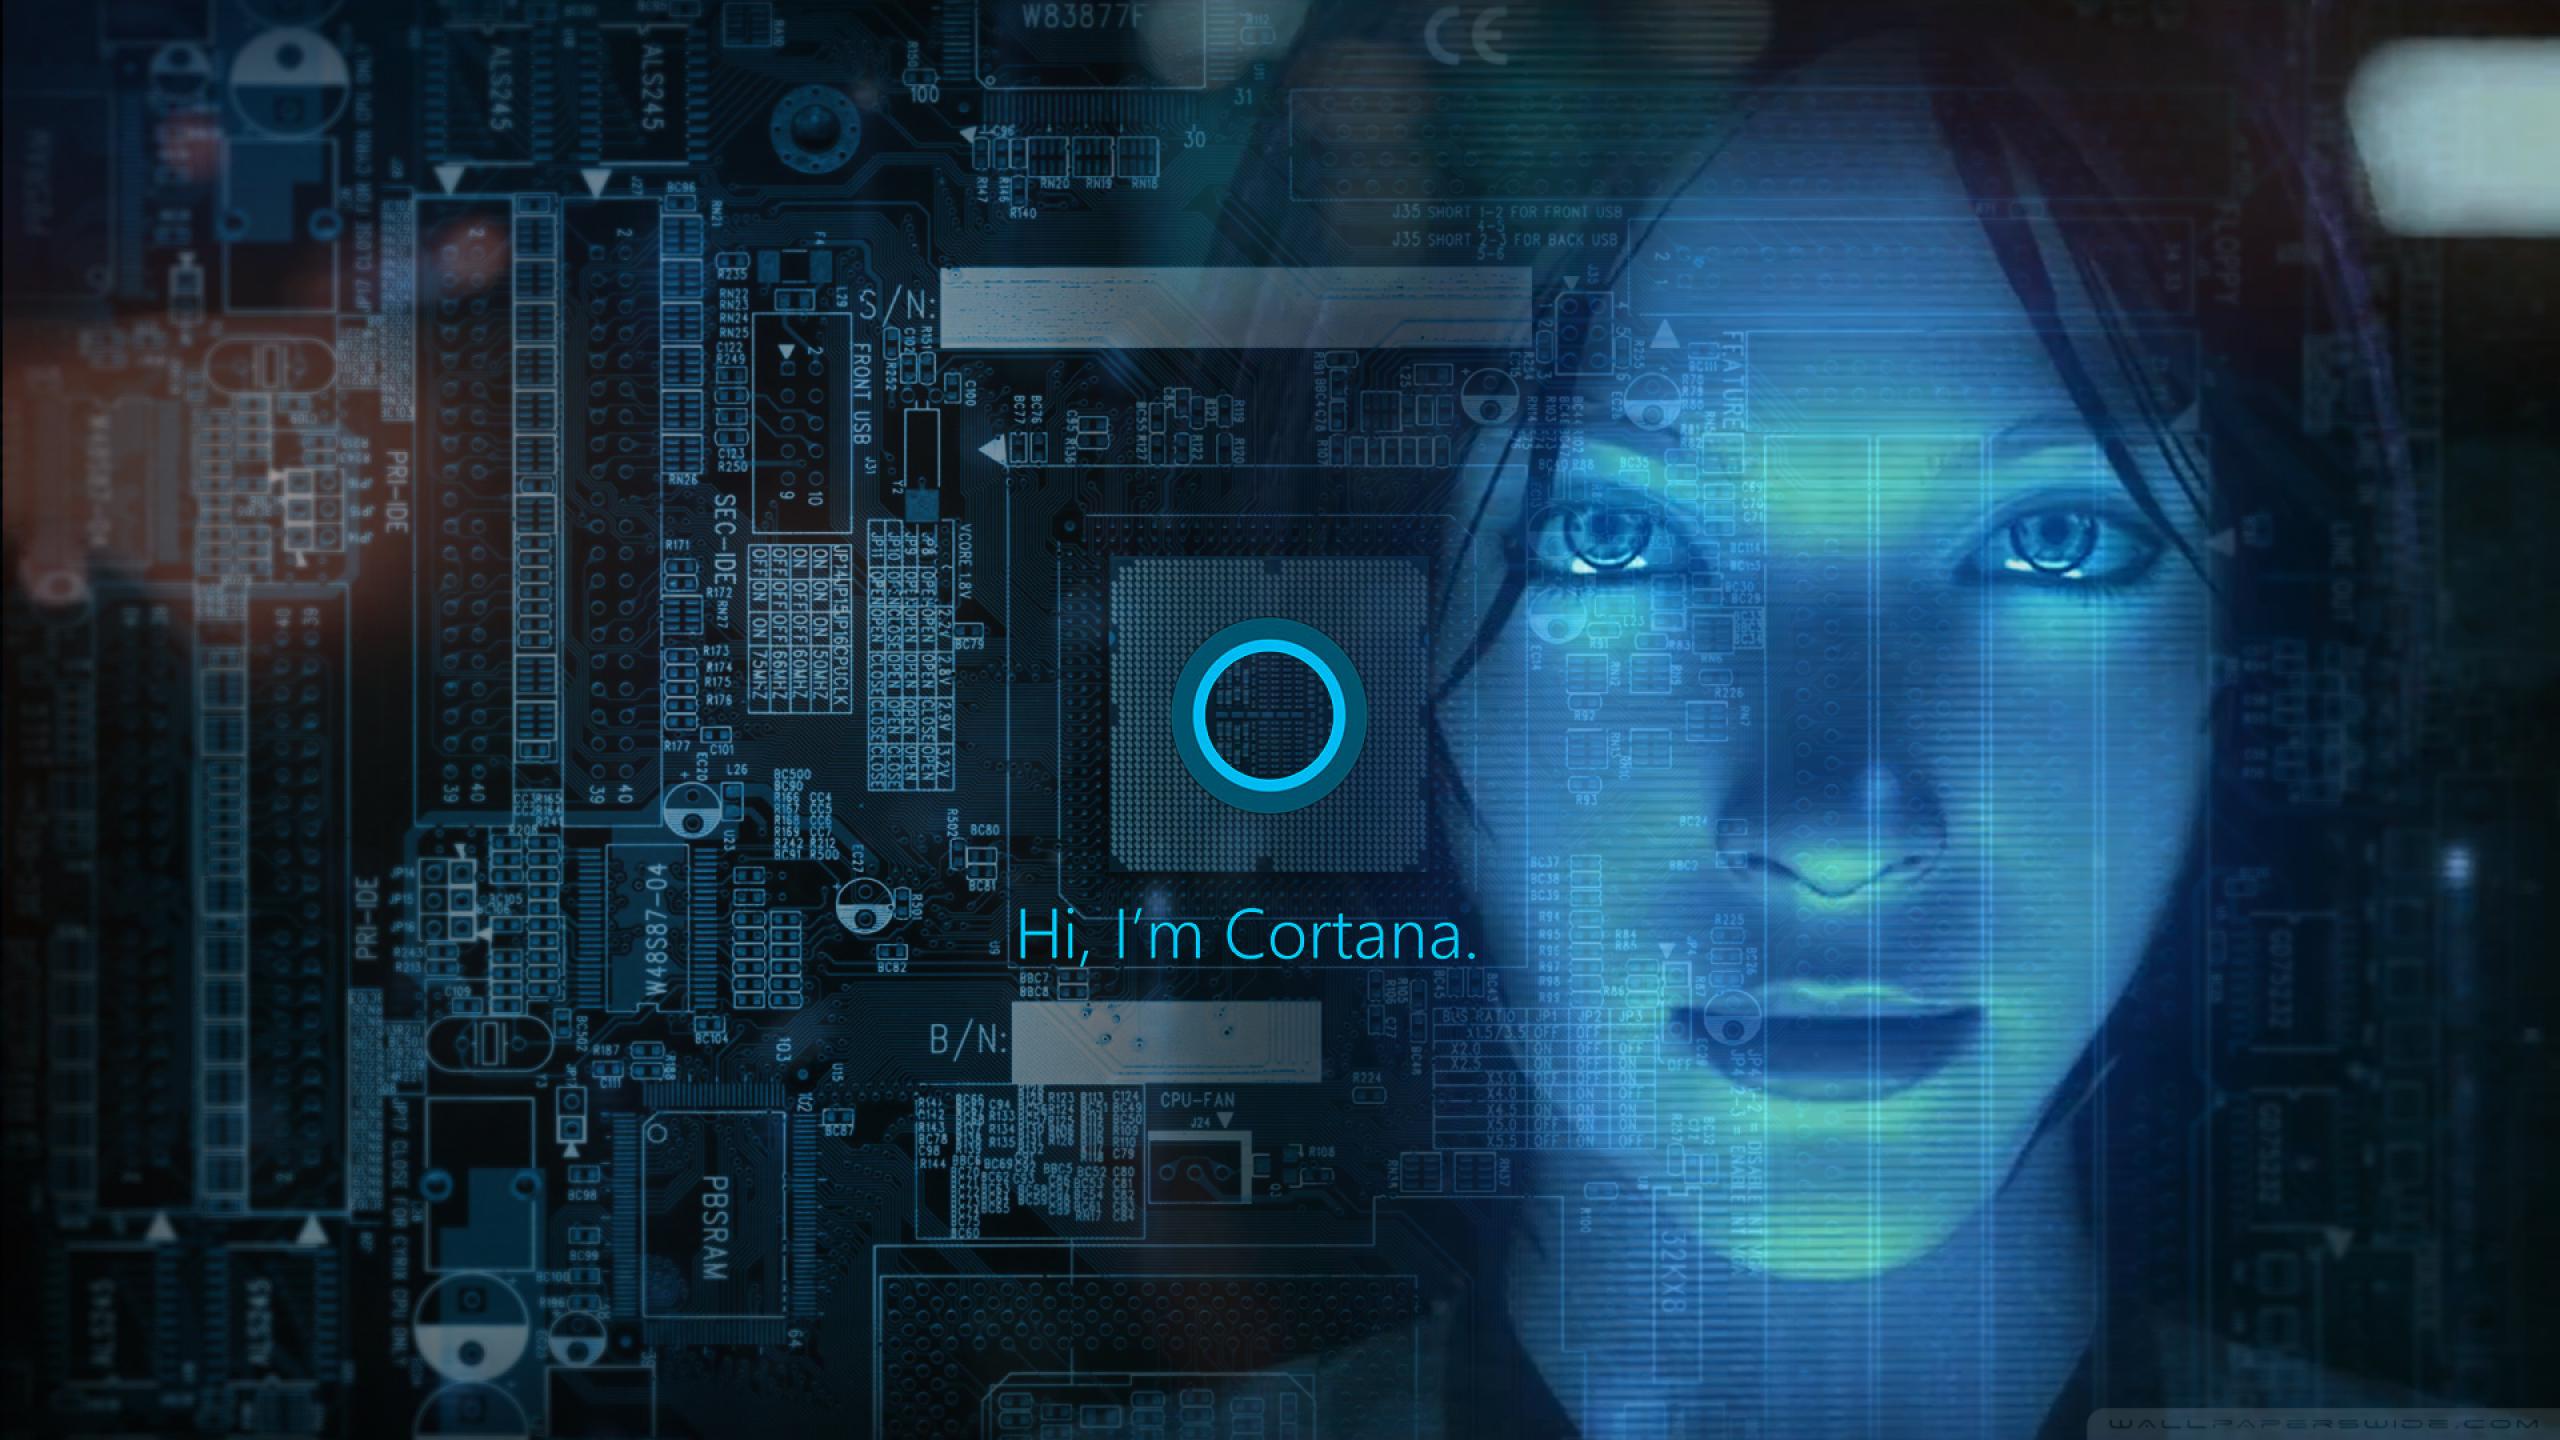 【熊大人美化分享】Win10小娜Cortana高清壁纸合集:老司机典藏版-